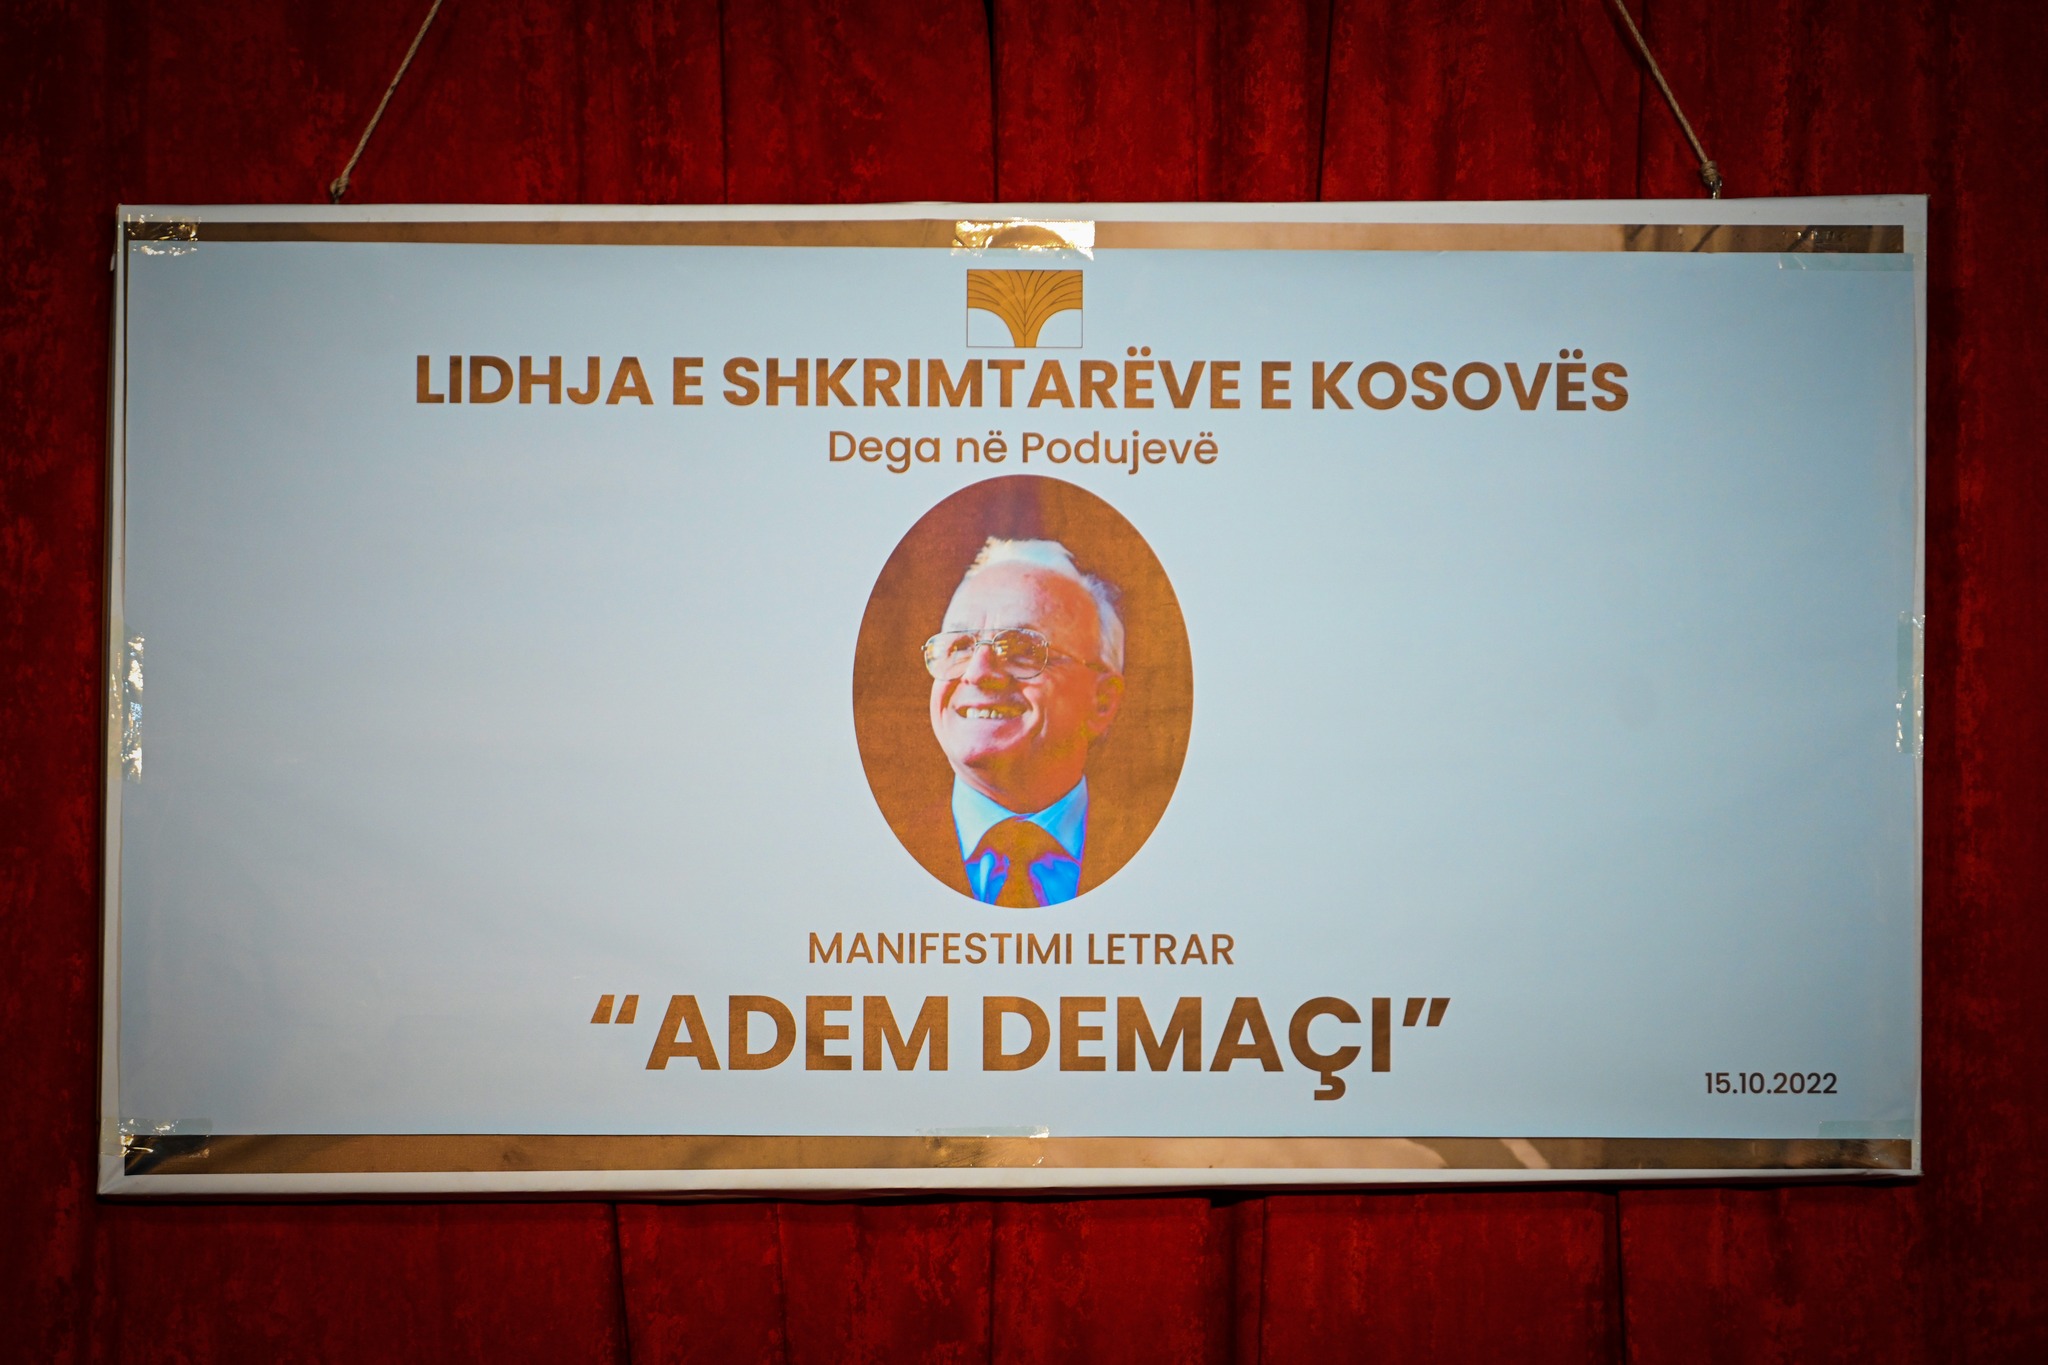  Podujevë: Mbahet manifestimin letrar për nder të ikonës dhe veprimtarit të madh kombëtar, Adem Demaçi.